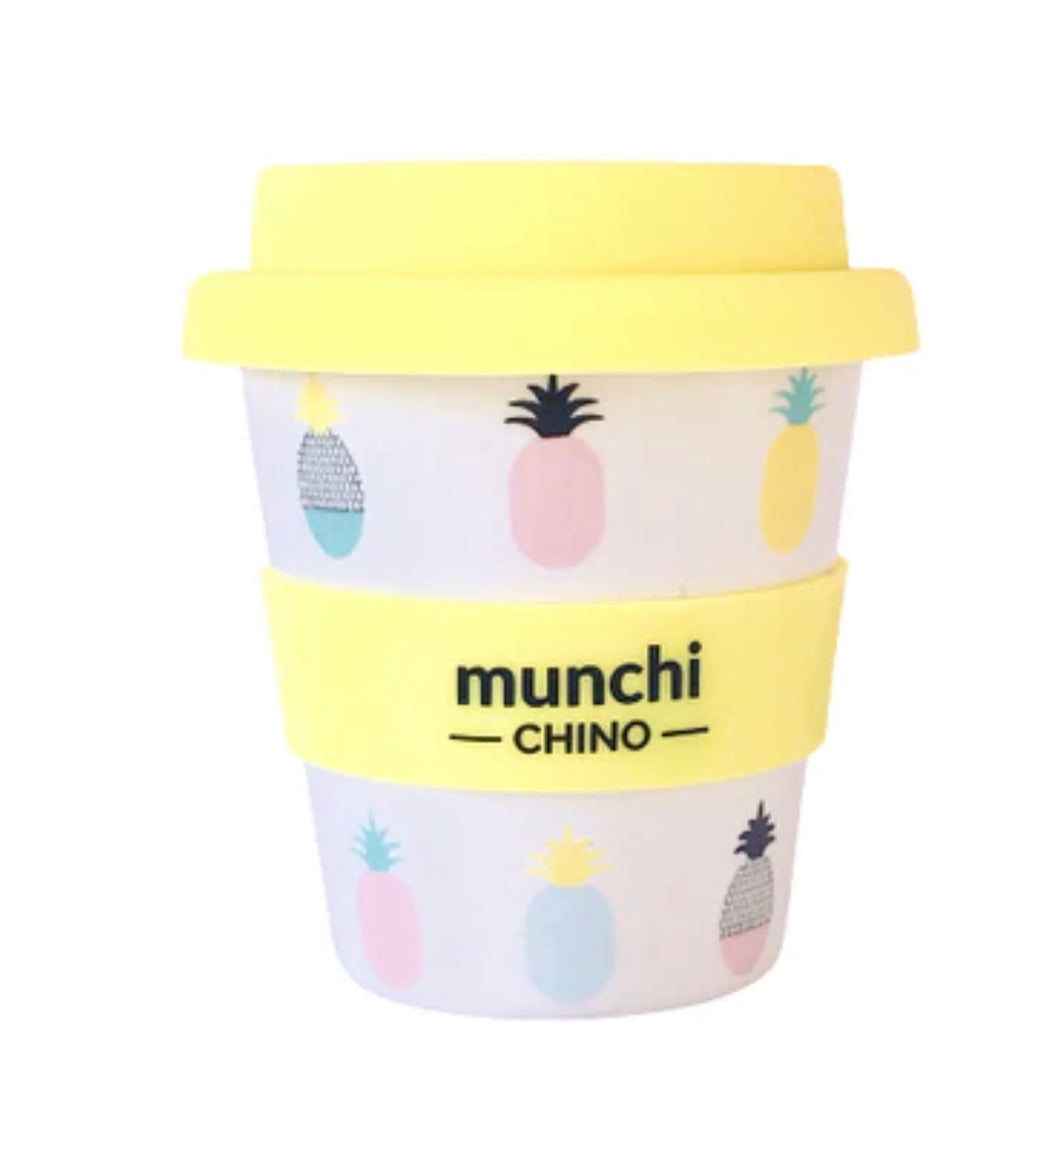 Munchi Baby Chino Cup